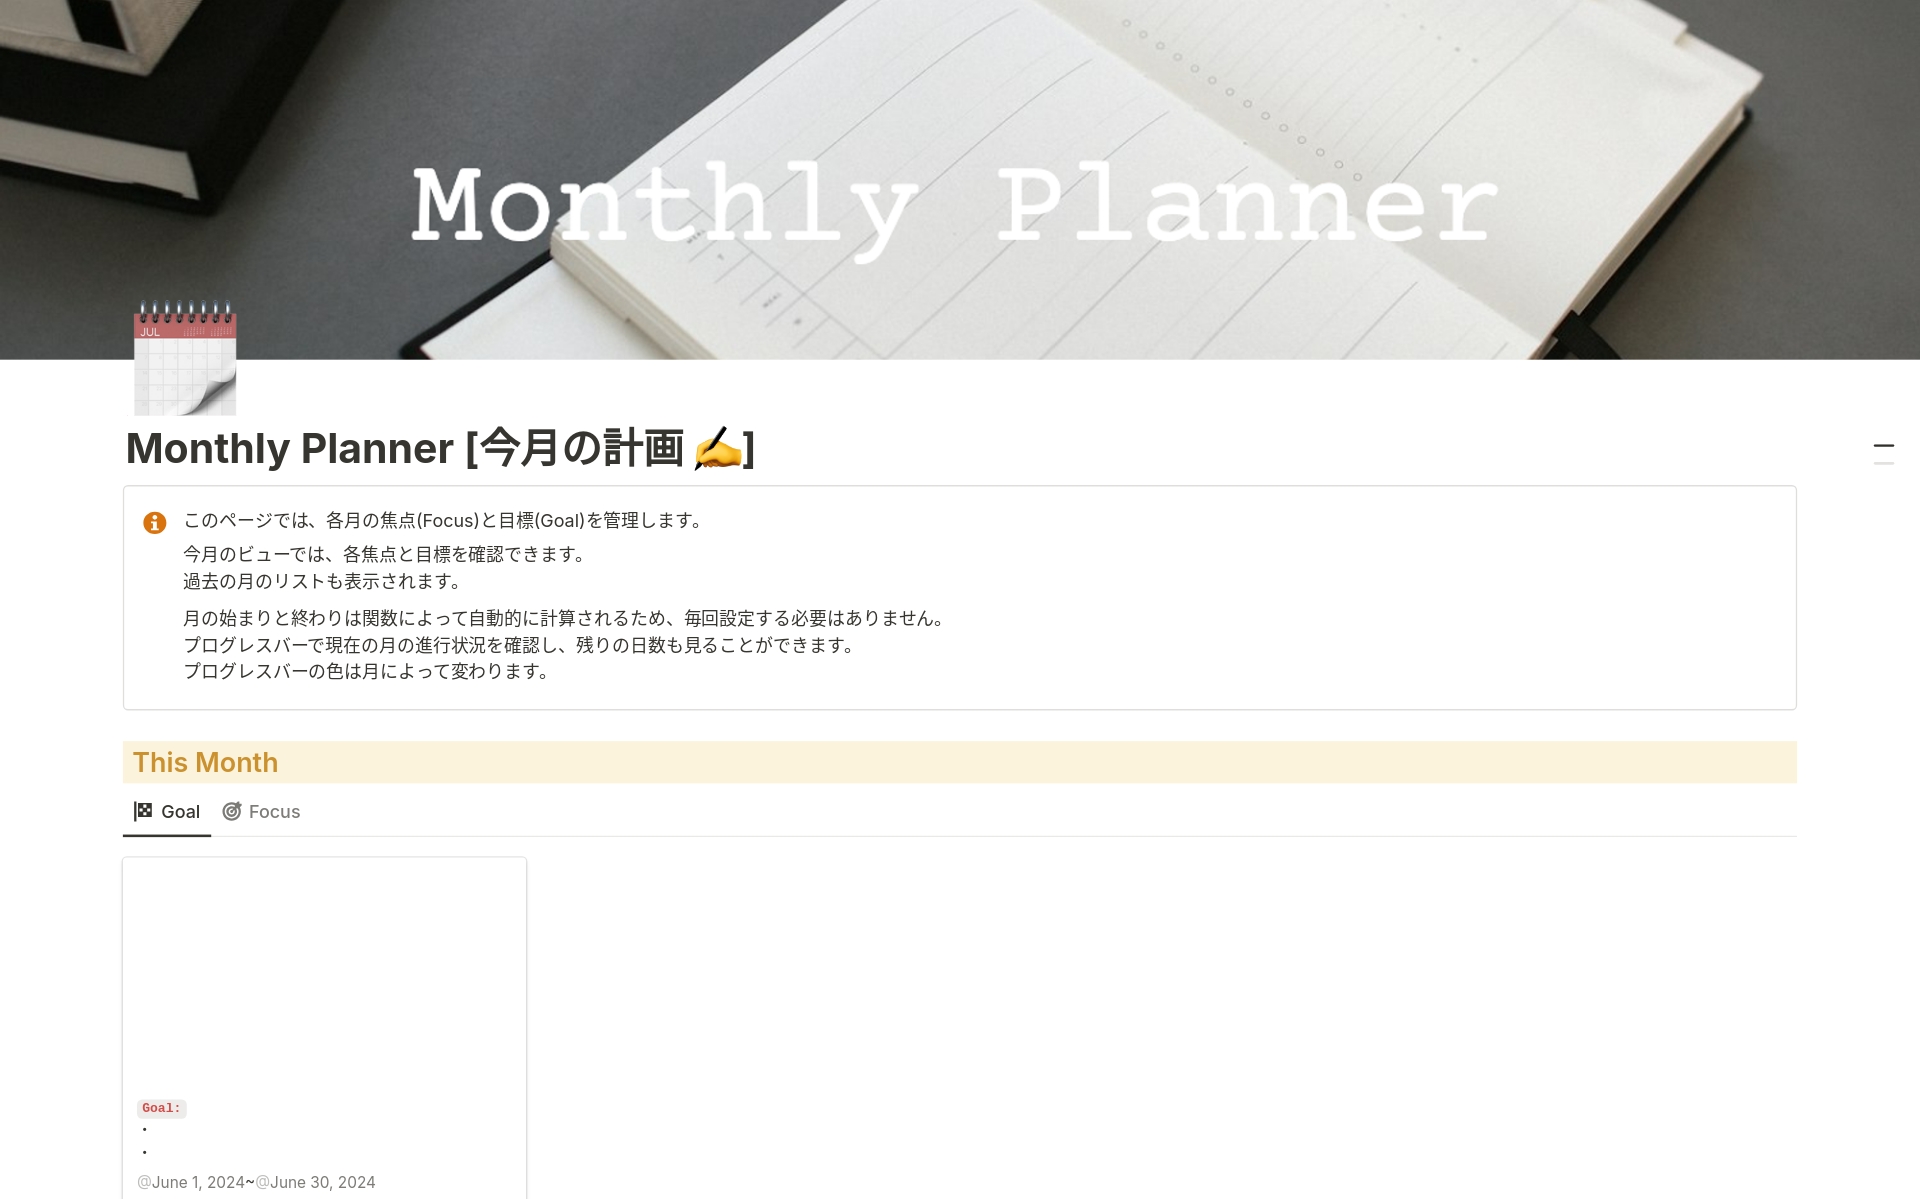 Vista previa de plantilla para Monthly Planner 月間計画